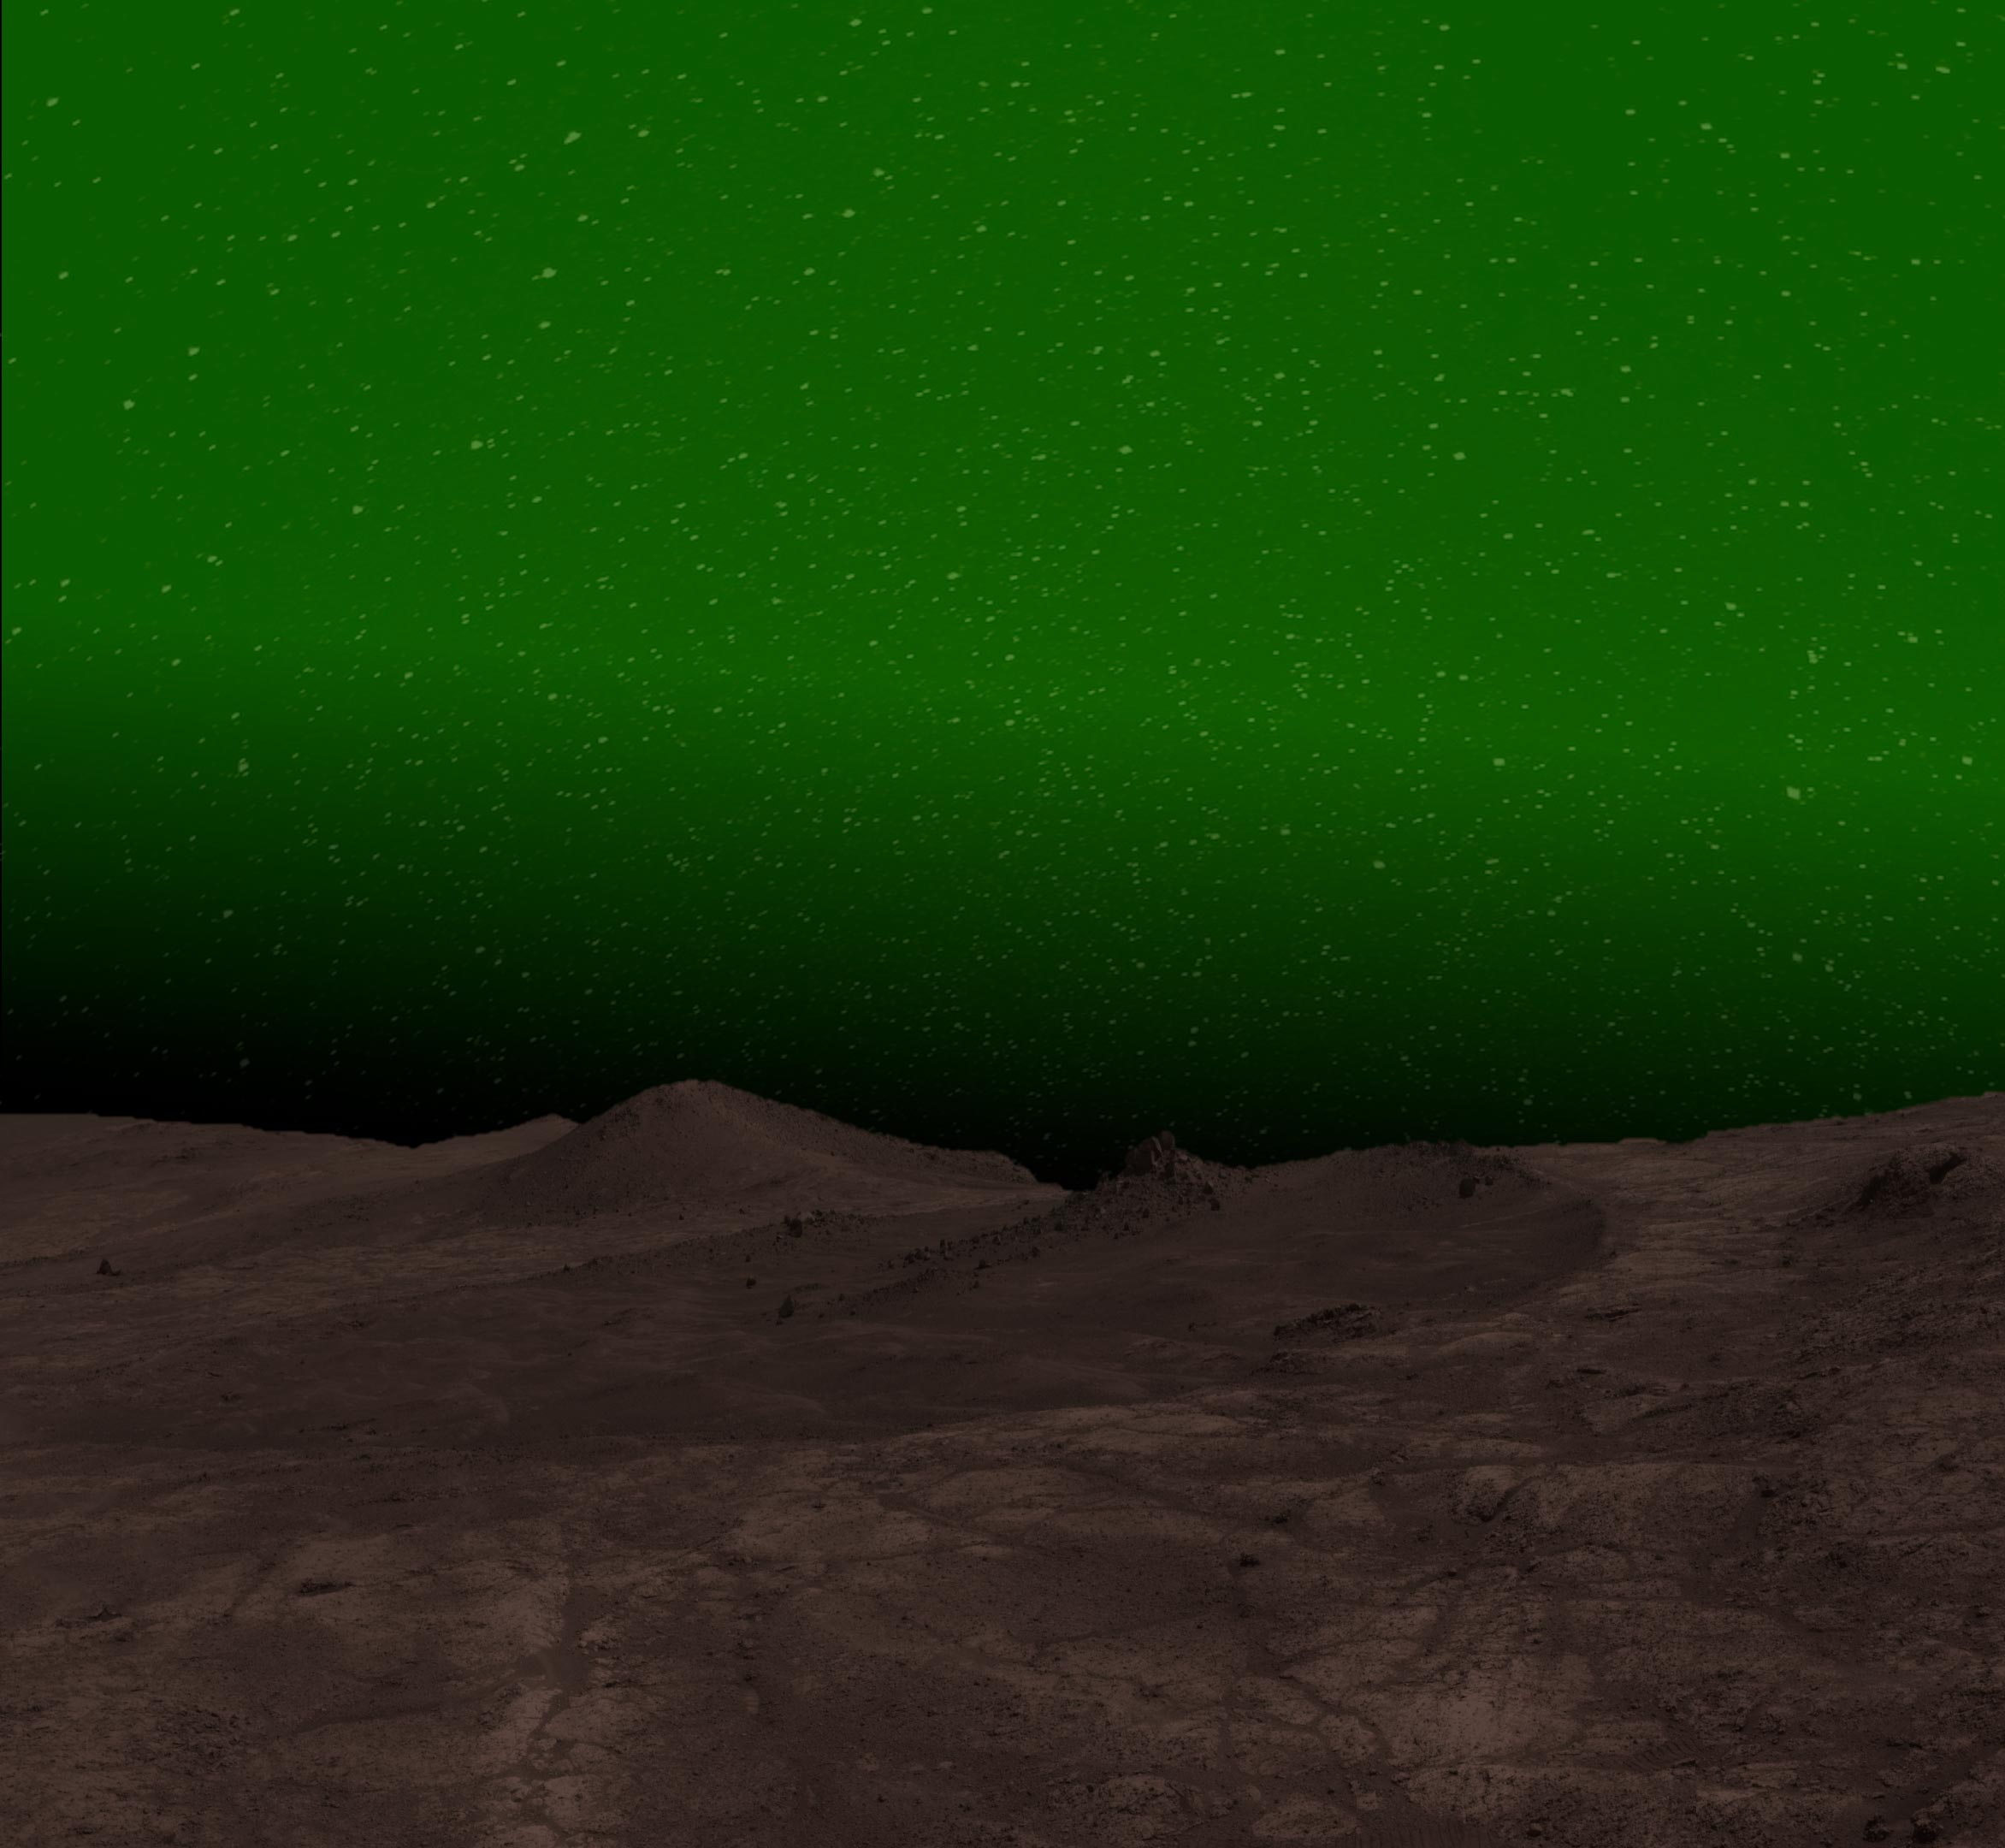 يكشف المريخ سره الليلي: اكتشاف الوهج الأخضر الساحر